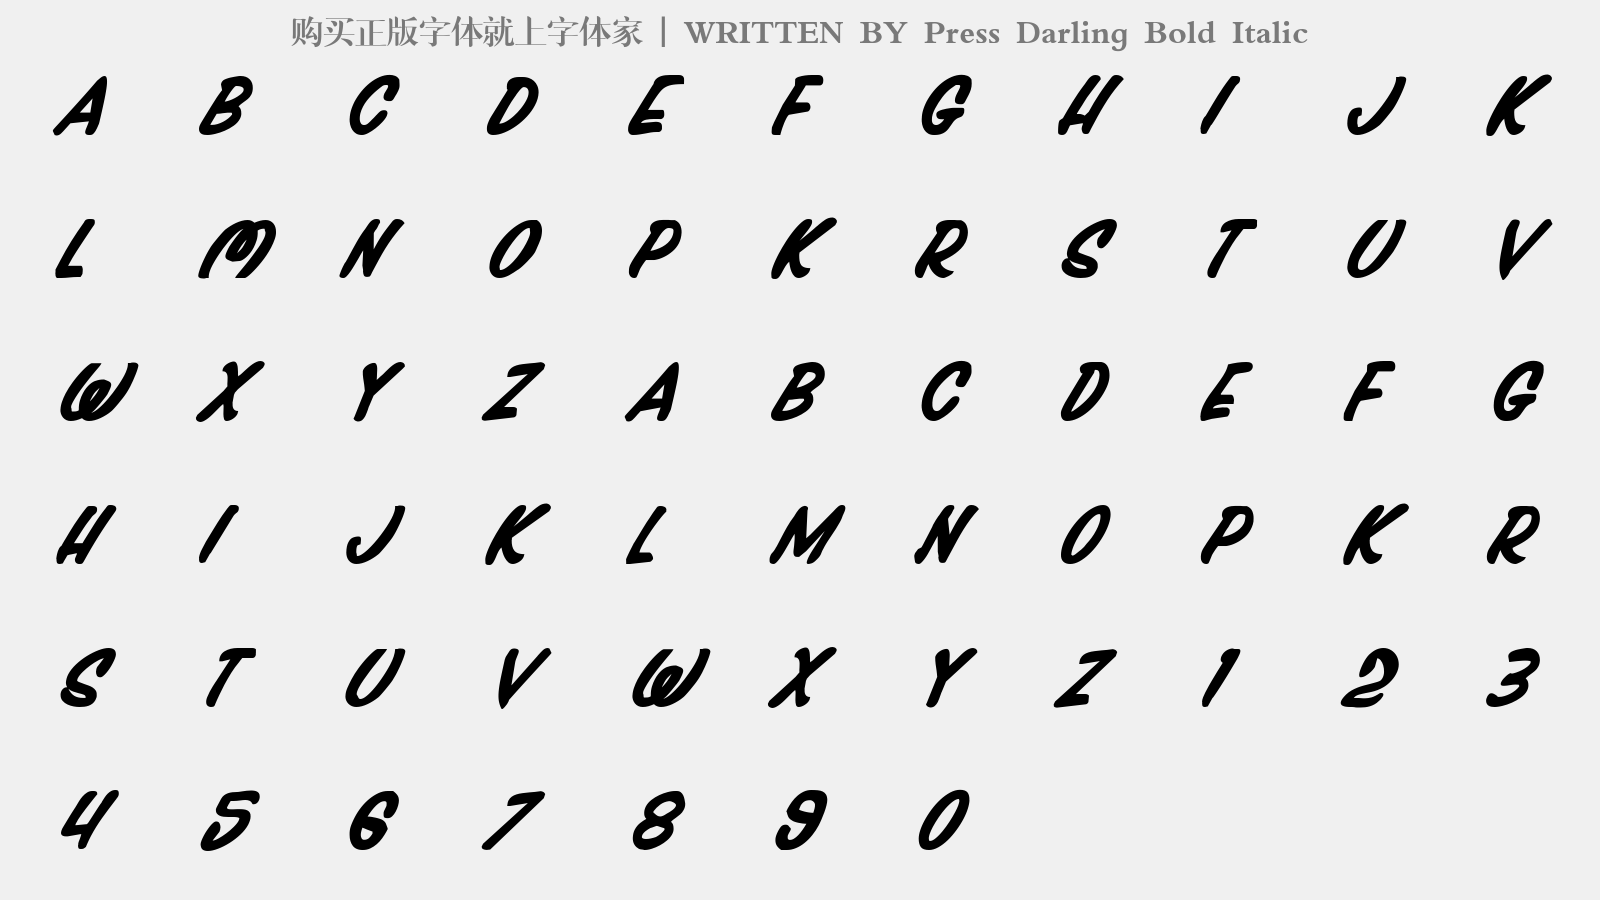 Press Darling Bold Italic - 大写字母/小写字母/数字